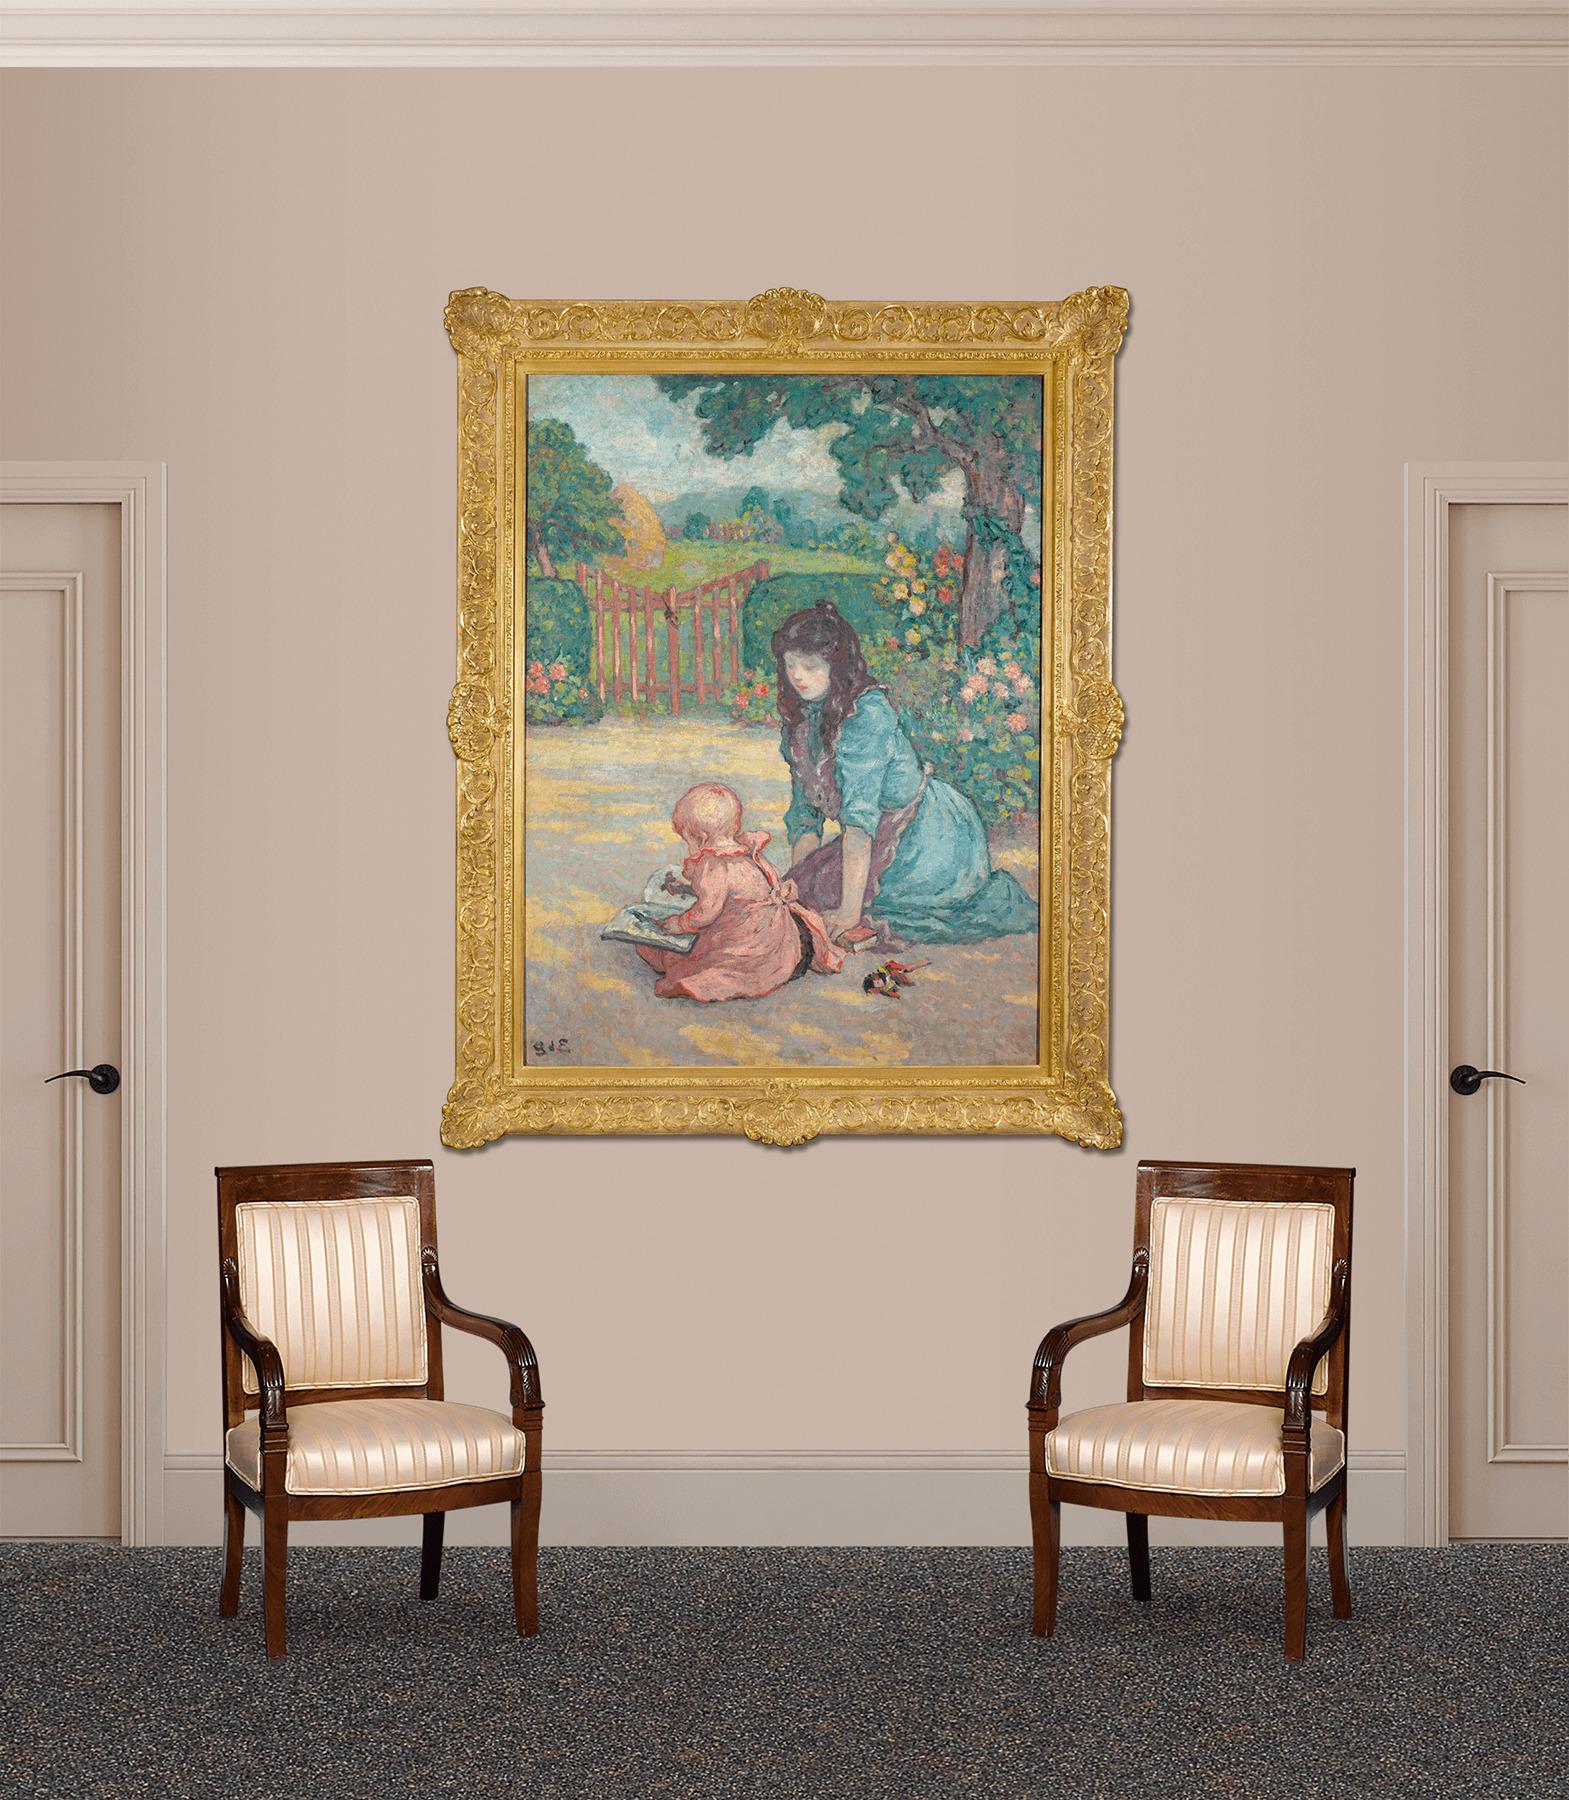 Le peintre post-impressionniste français Georges d'Espagnat capture un moment charmant entre une mère et son enfant dans cette vibrante huile sur toile. Rendu avec une utilisation étudiée de couleurs complémentaires et de coups de pinceau audacieux,